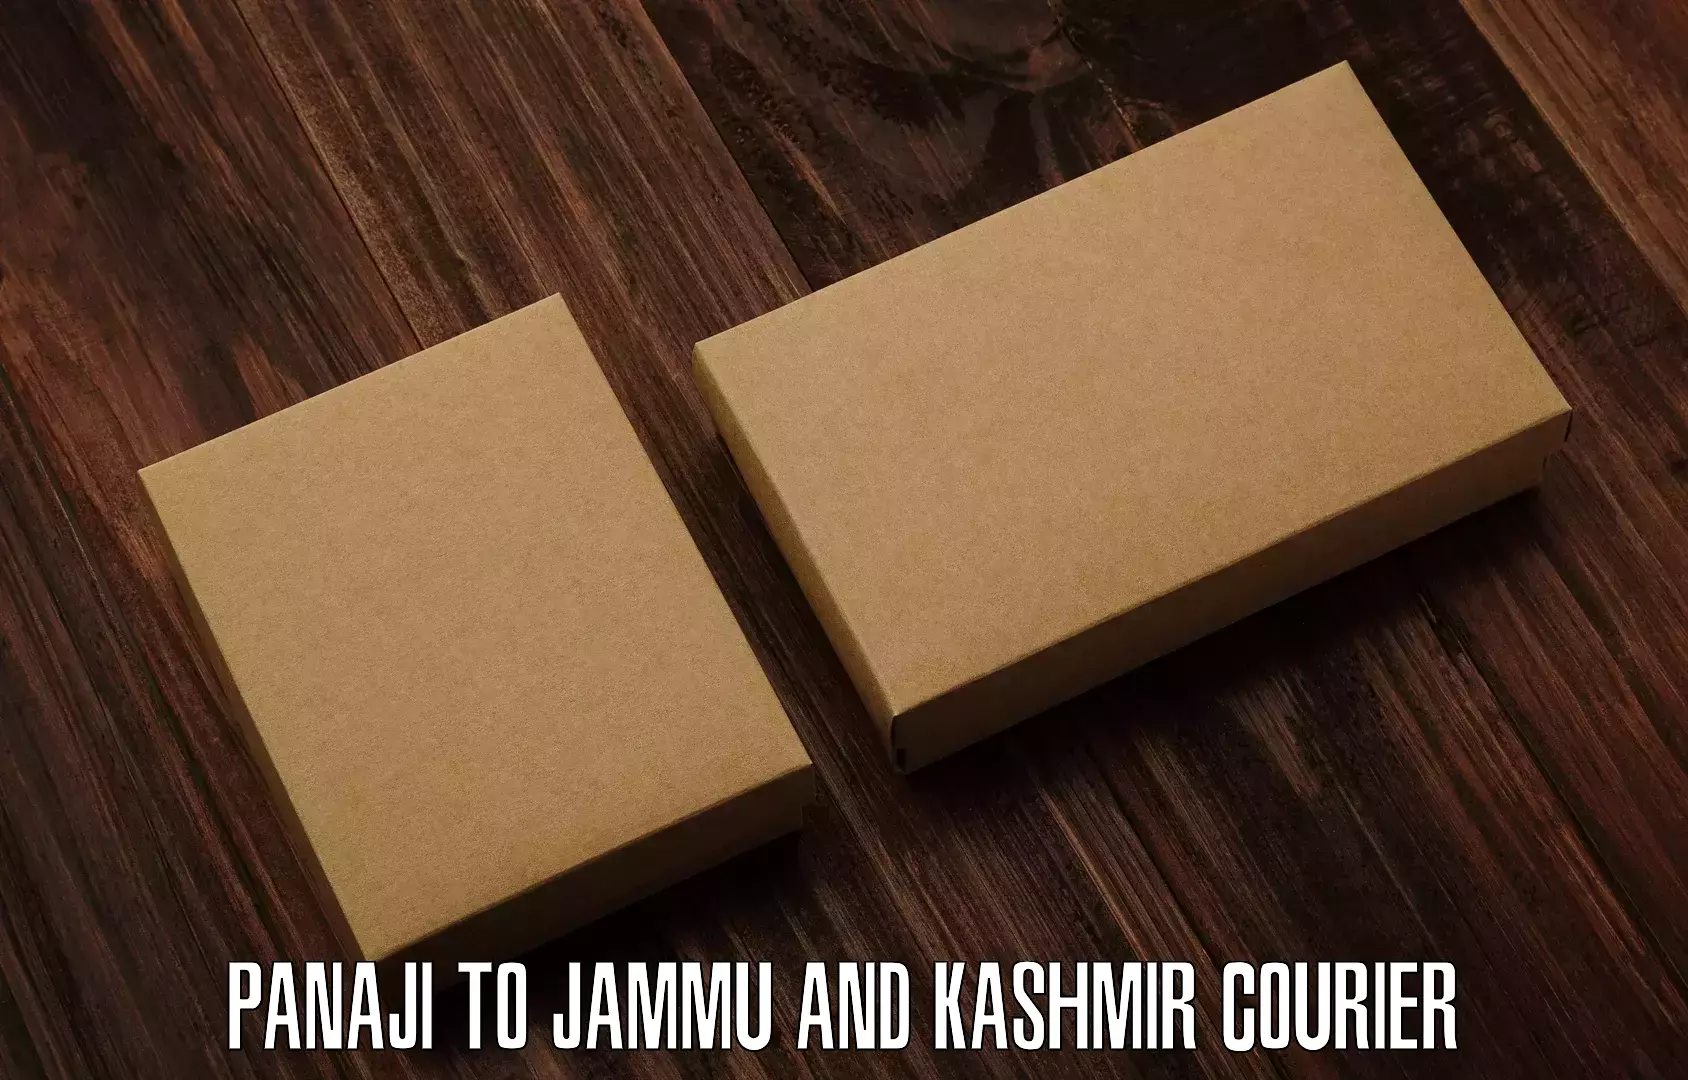 Customer-focused courier Panaji to Jammu